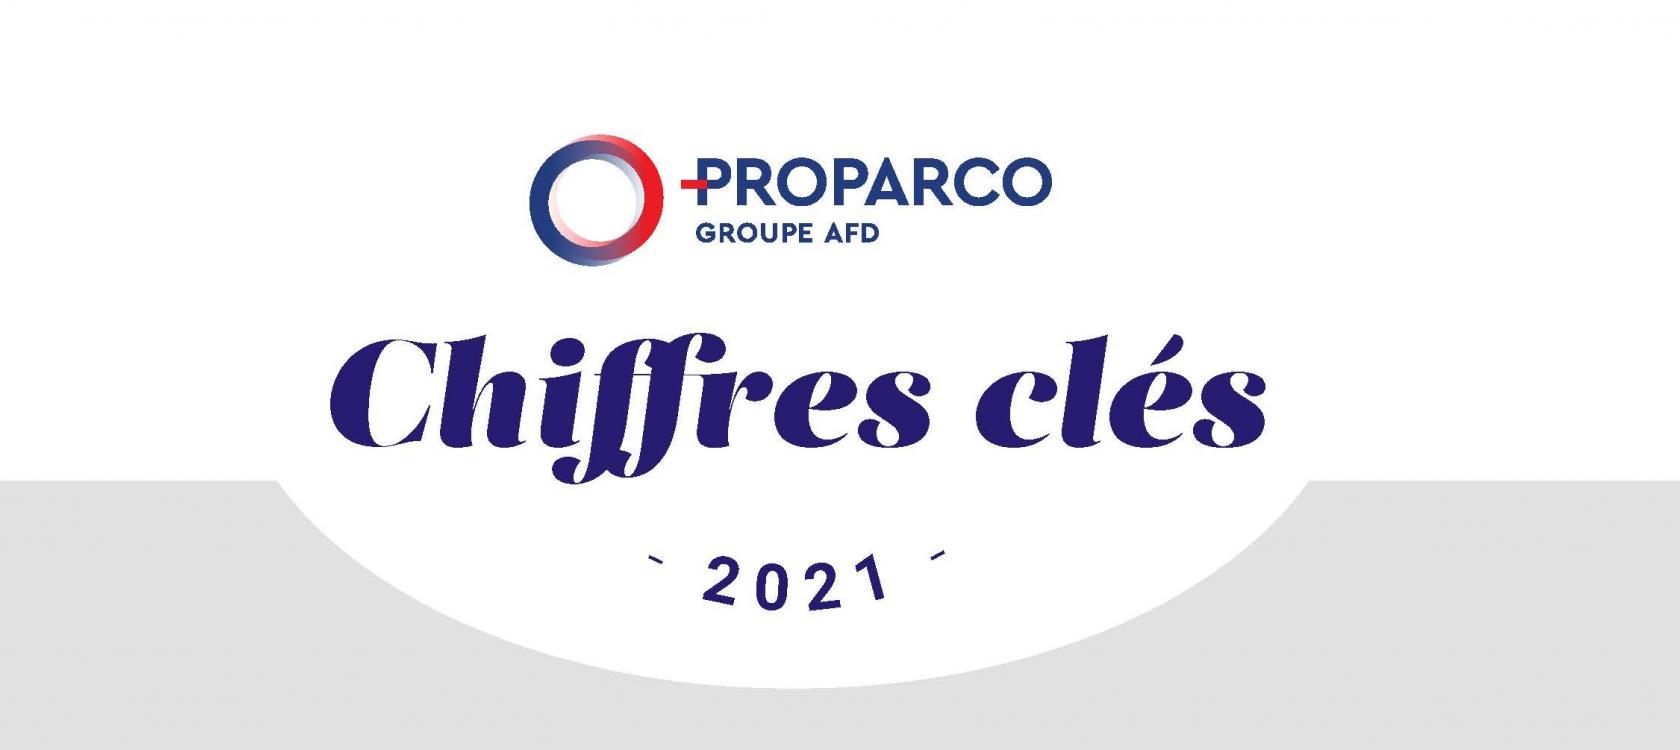 Proparco en 2021 : 2,3 mds € d’engagements pour renforcer son soutien au secteur privé